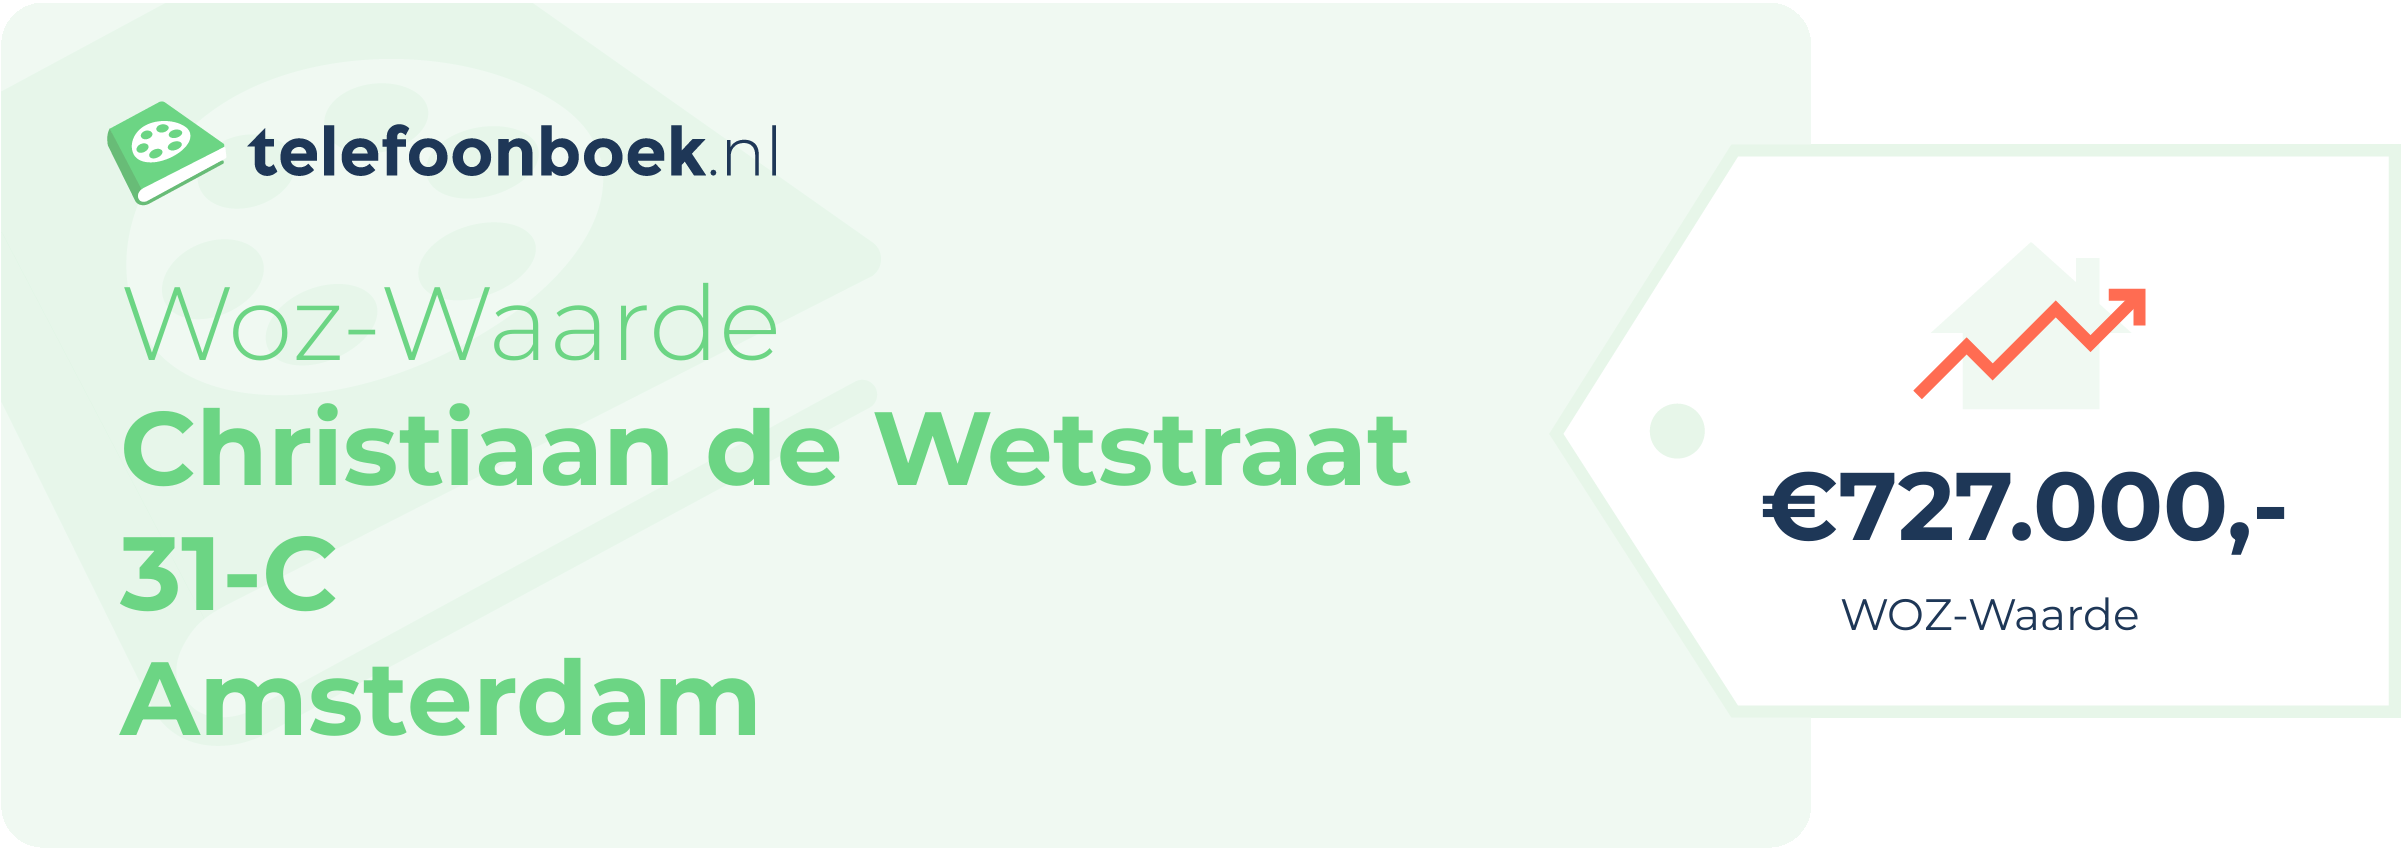 WOZ-waarde Christiaan De Wetstraat 31-C Amsterdam